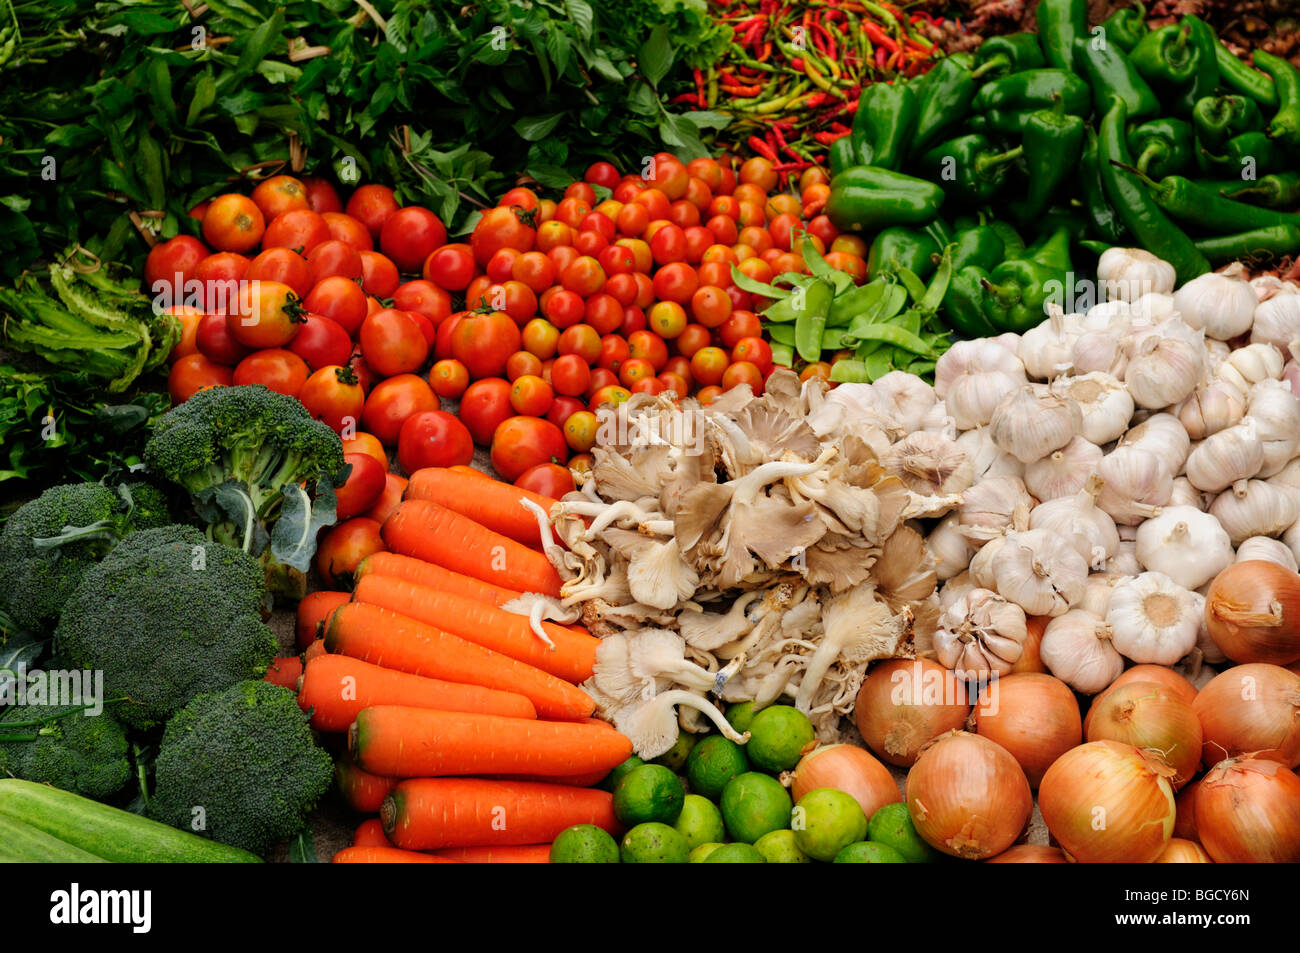 Le Laos, Luang Prabang ; affichage de légumes au marché des produits frais Banque D'Images